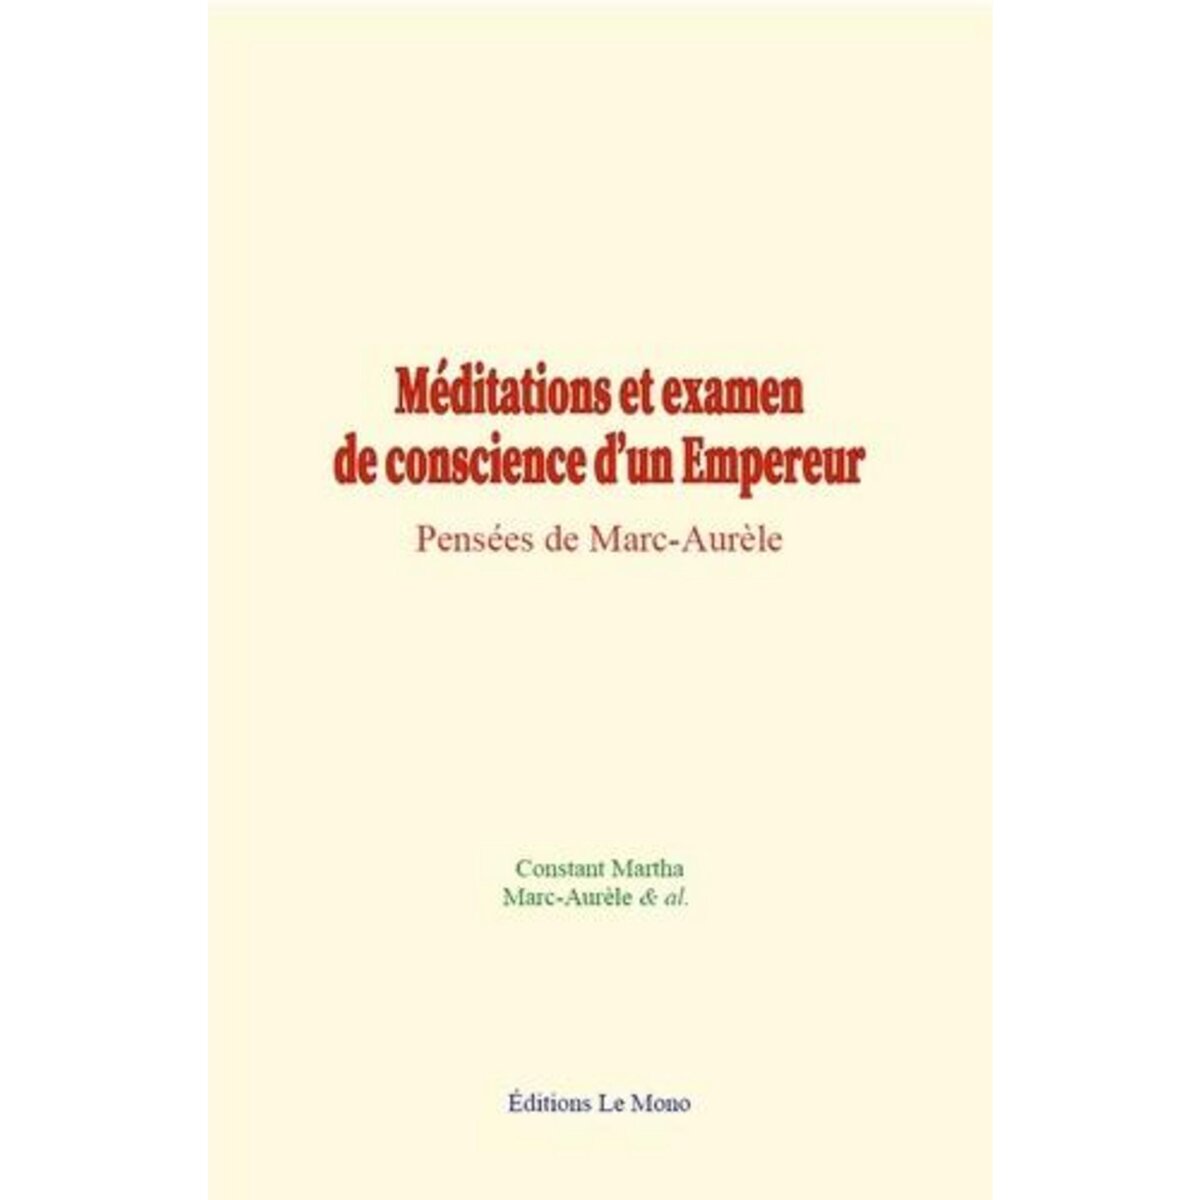  MEDITATIONS ET EXAMEN DE CONSCIENCE D'UN EMPEREUR. PENSEES DE MARC-AURELE, Martha Constant